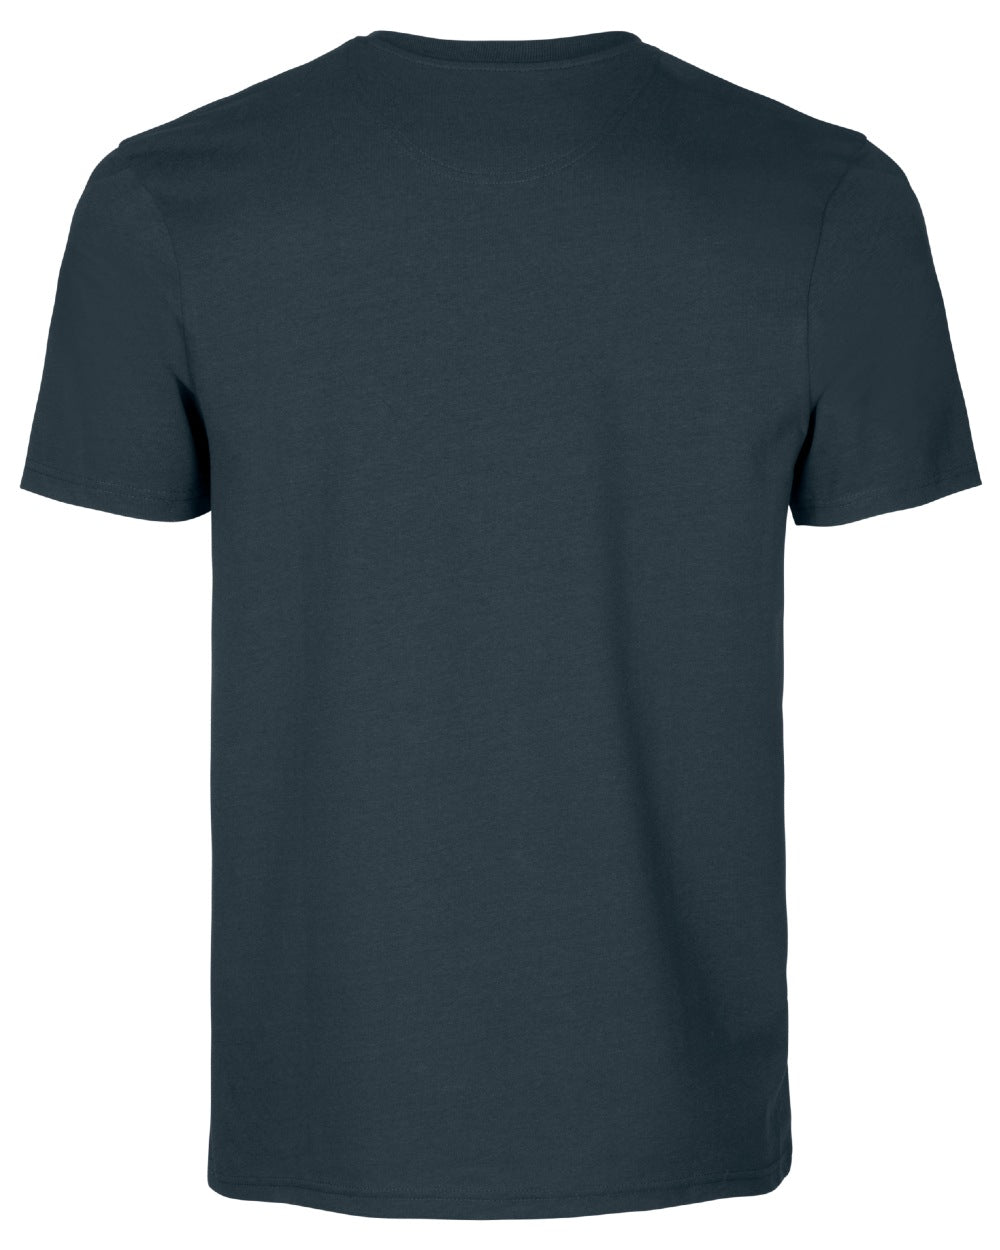 Dark Navy coloured Seeland Kestrel T-Shirt on white background 